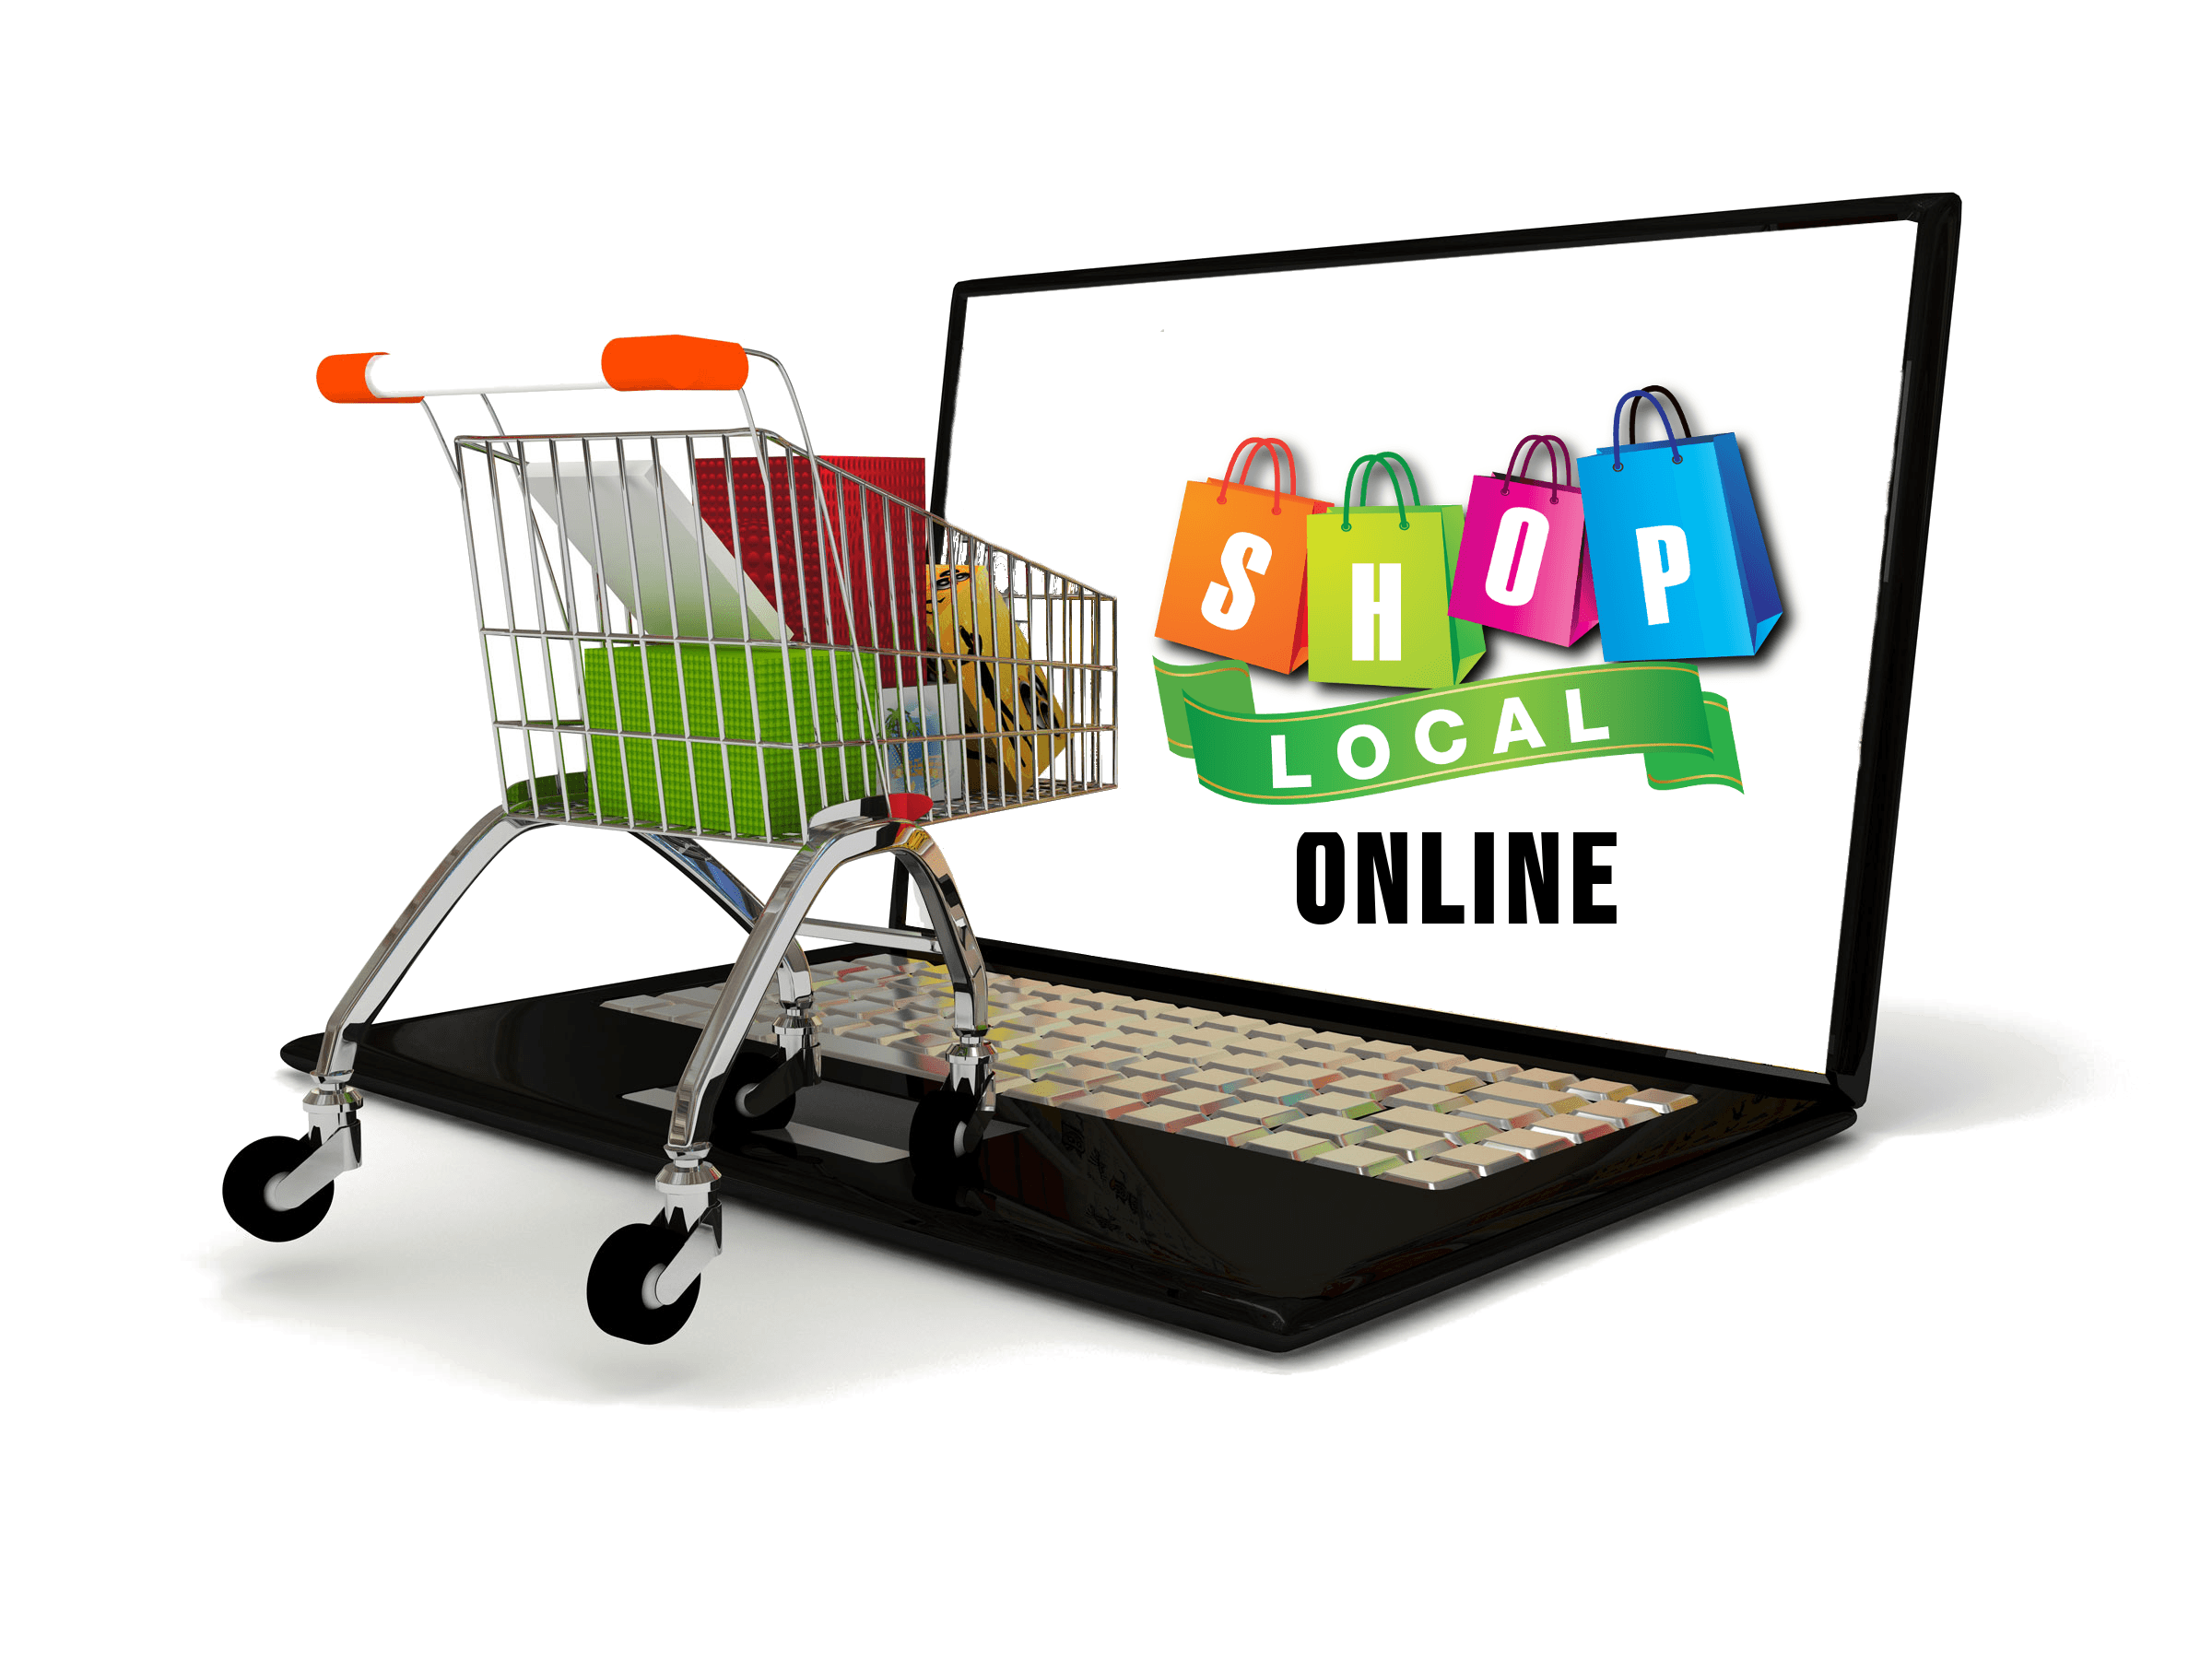 Как найти поставщика для интернет магазина и на каких условиях - где берут товар интернет магазины?